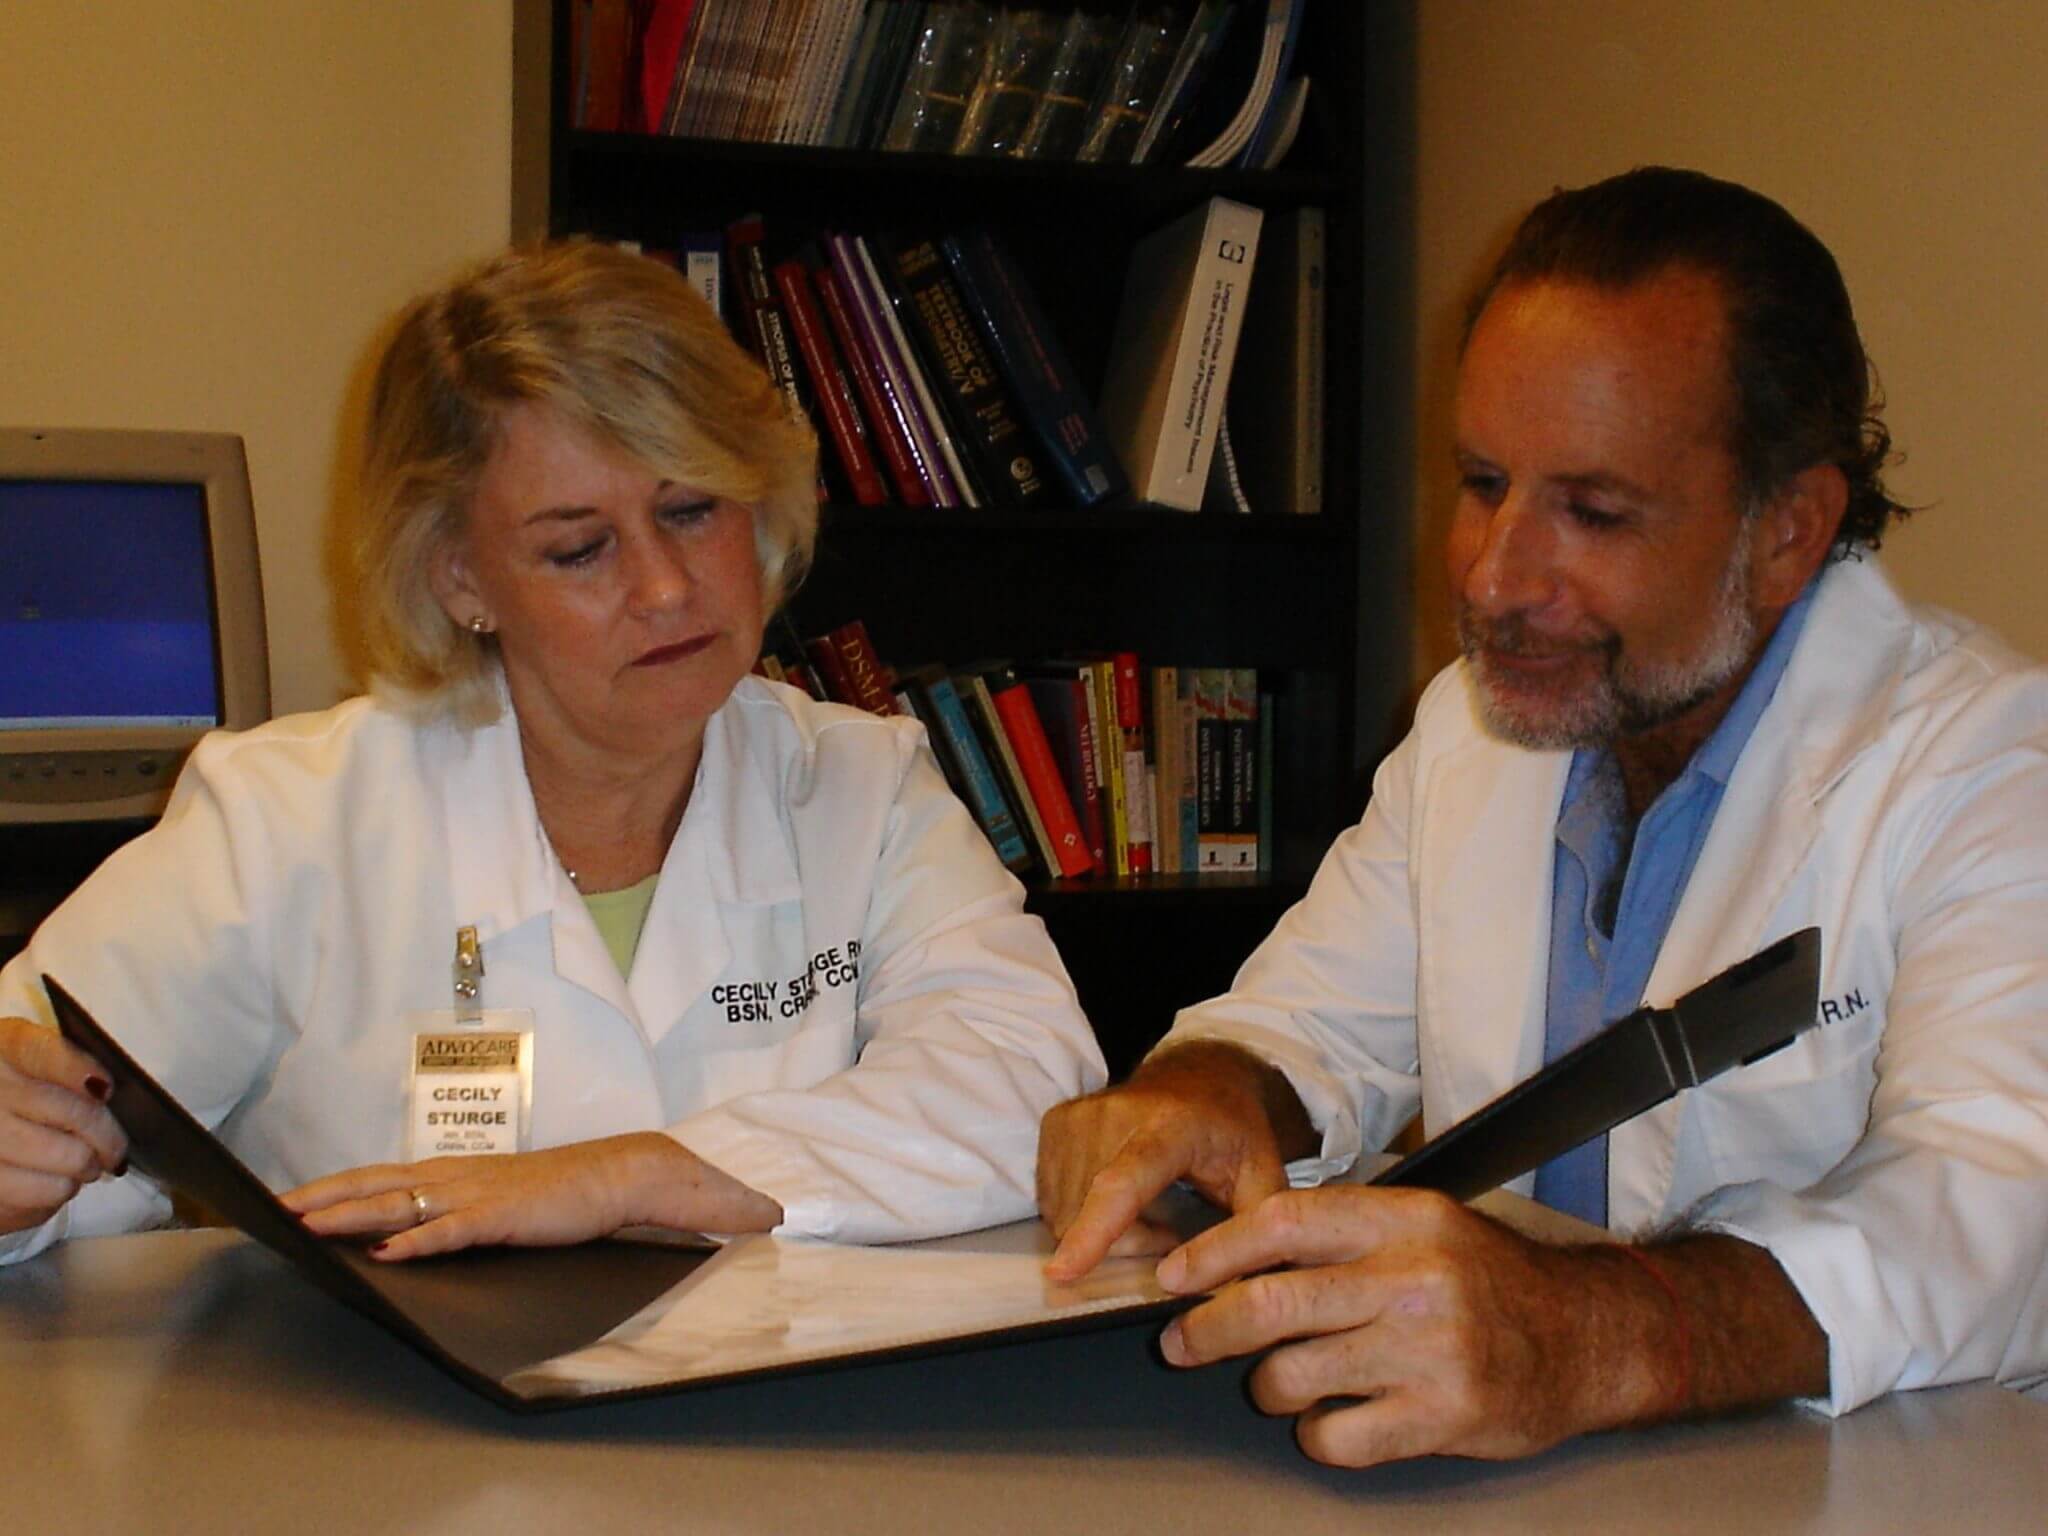 Doctors looking over paperwork